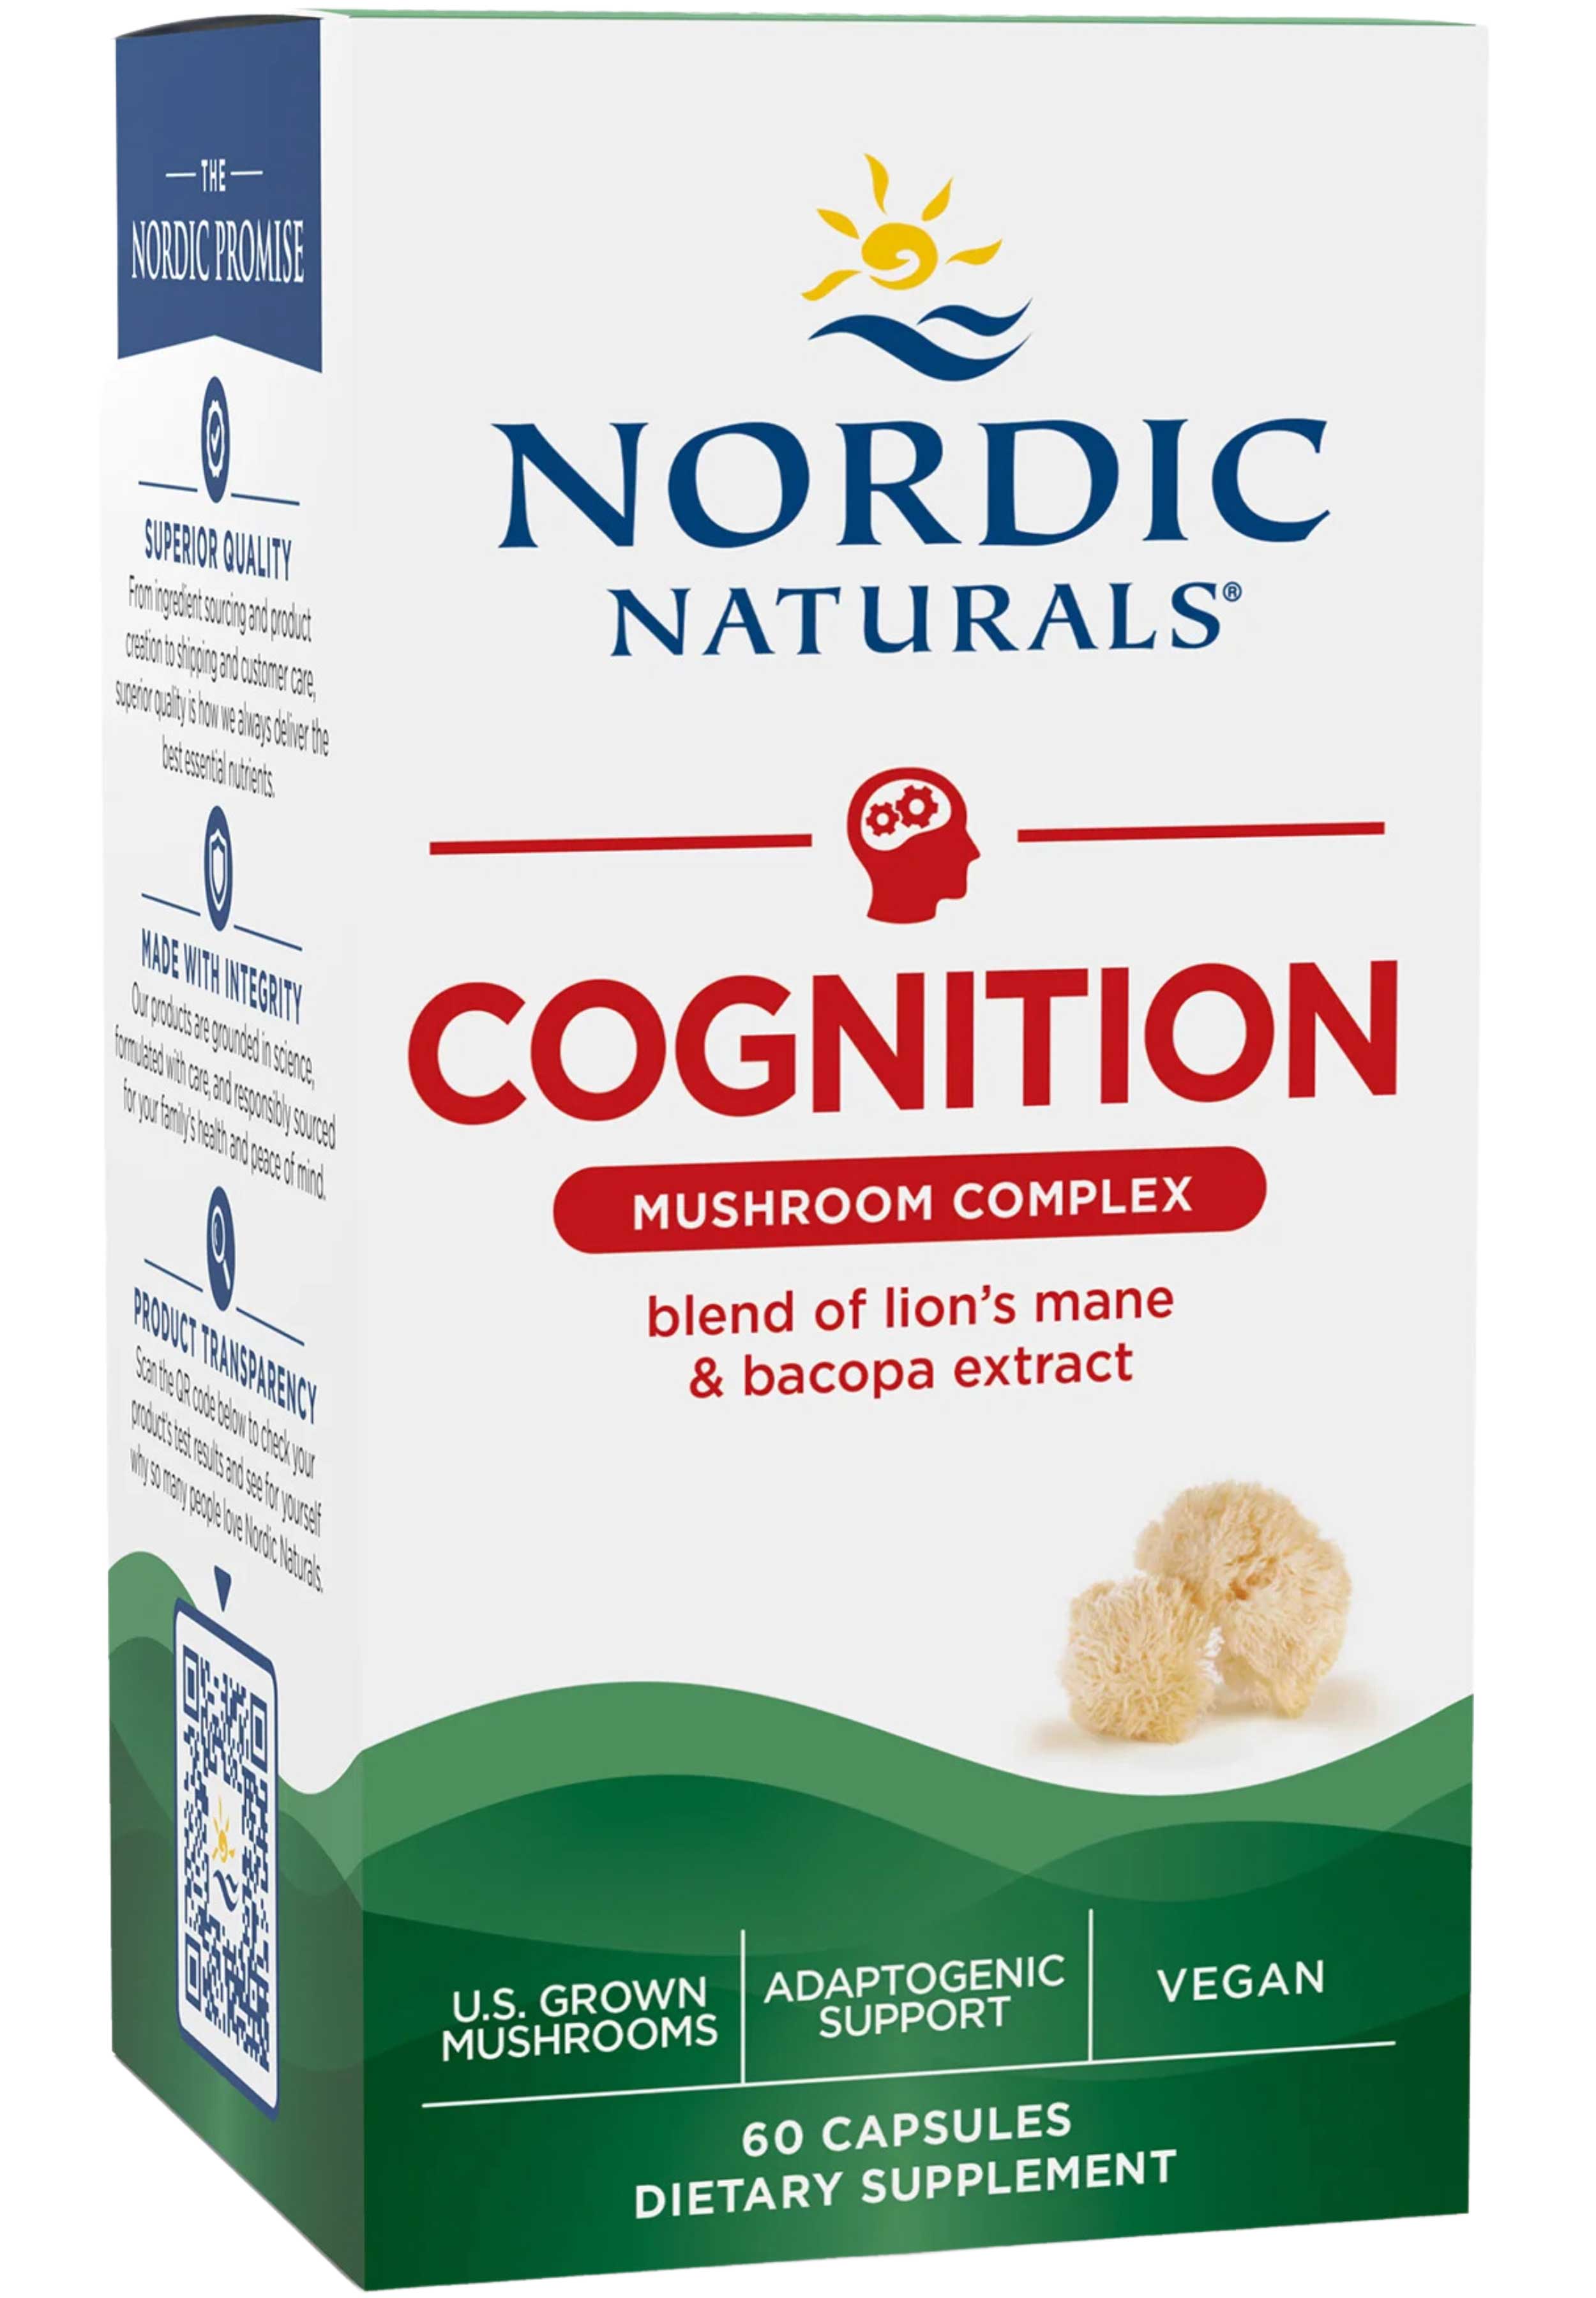 Nordic Naturals Cognition Mushroom Complex